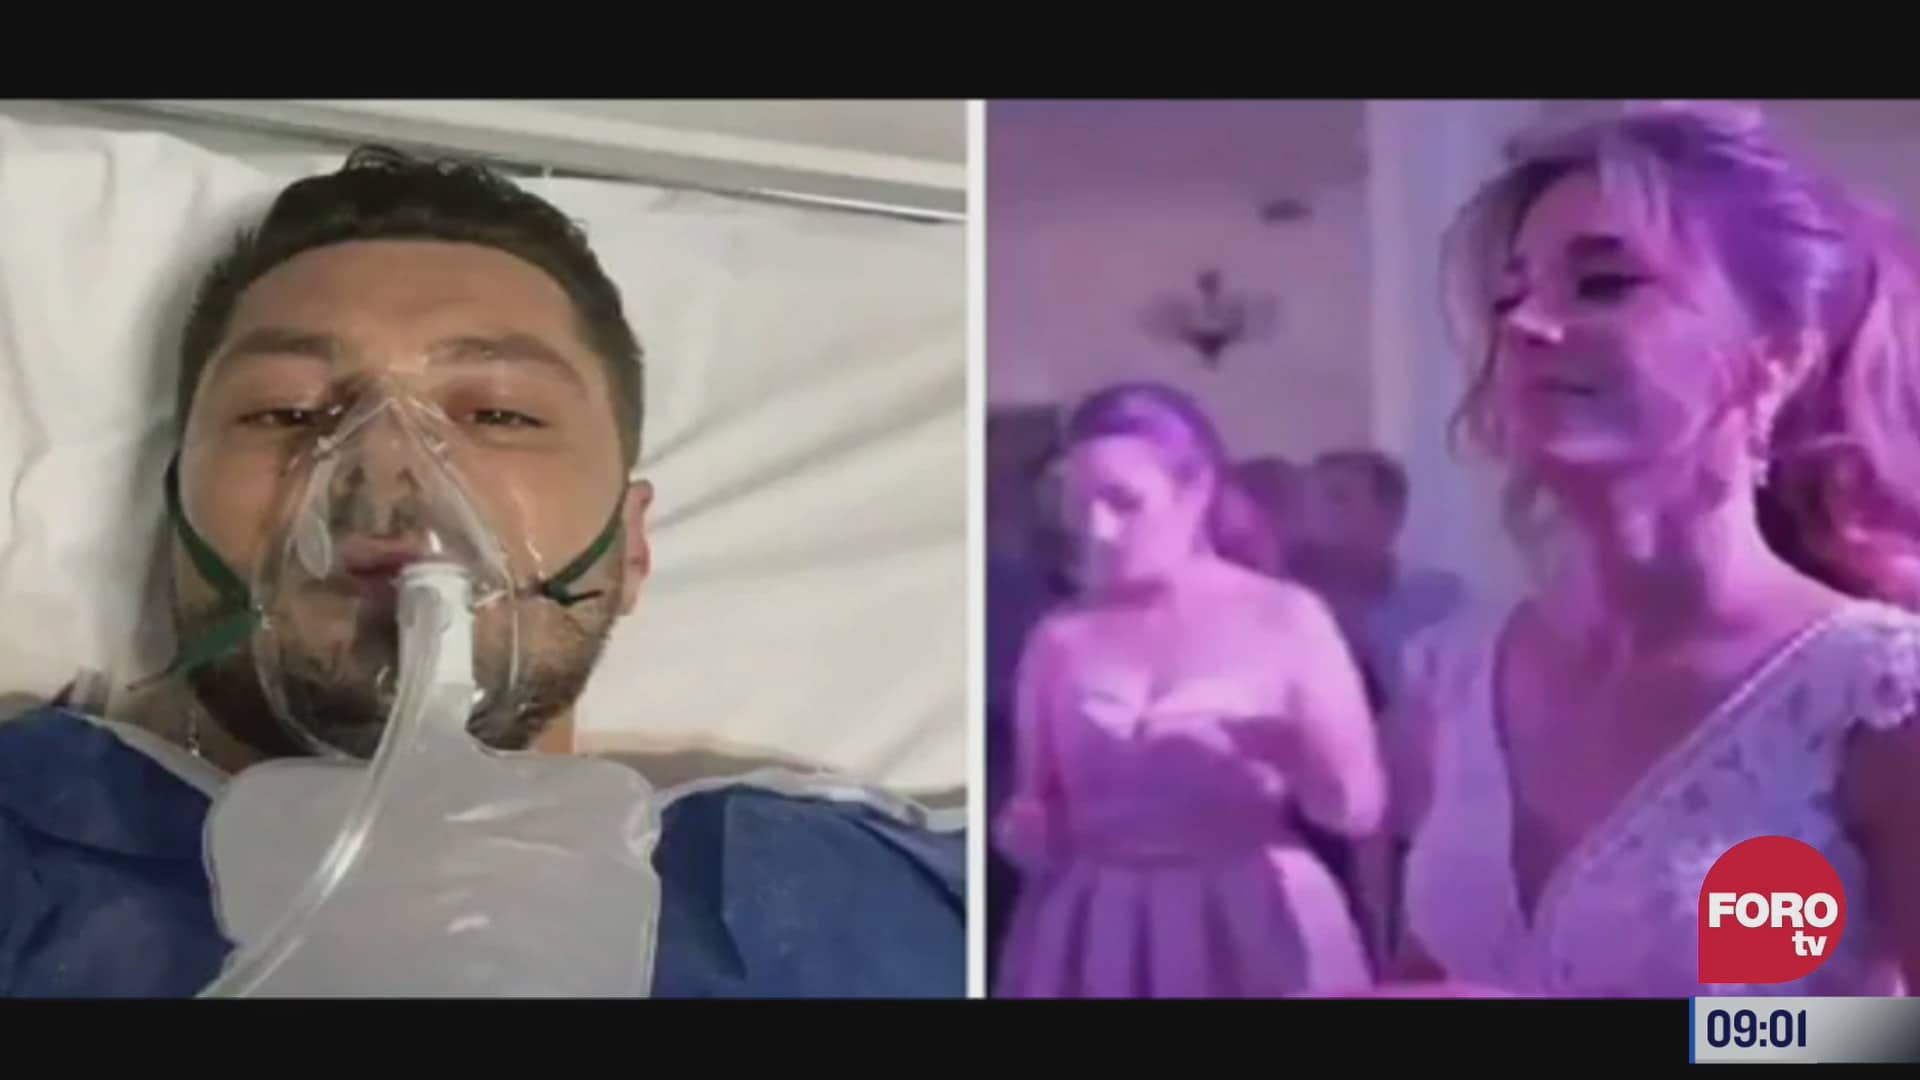 lanzan al novio al aire durante boda y termina en el hospital con dano vertebral